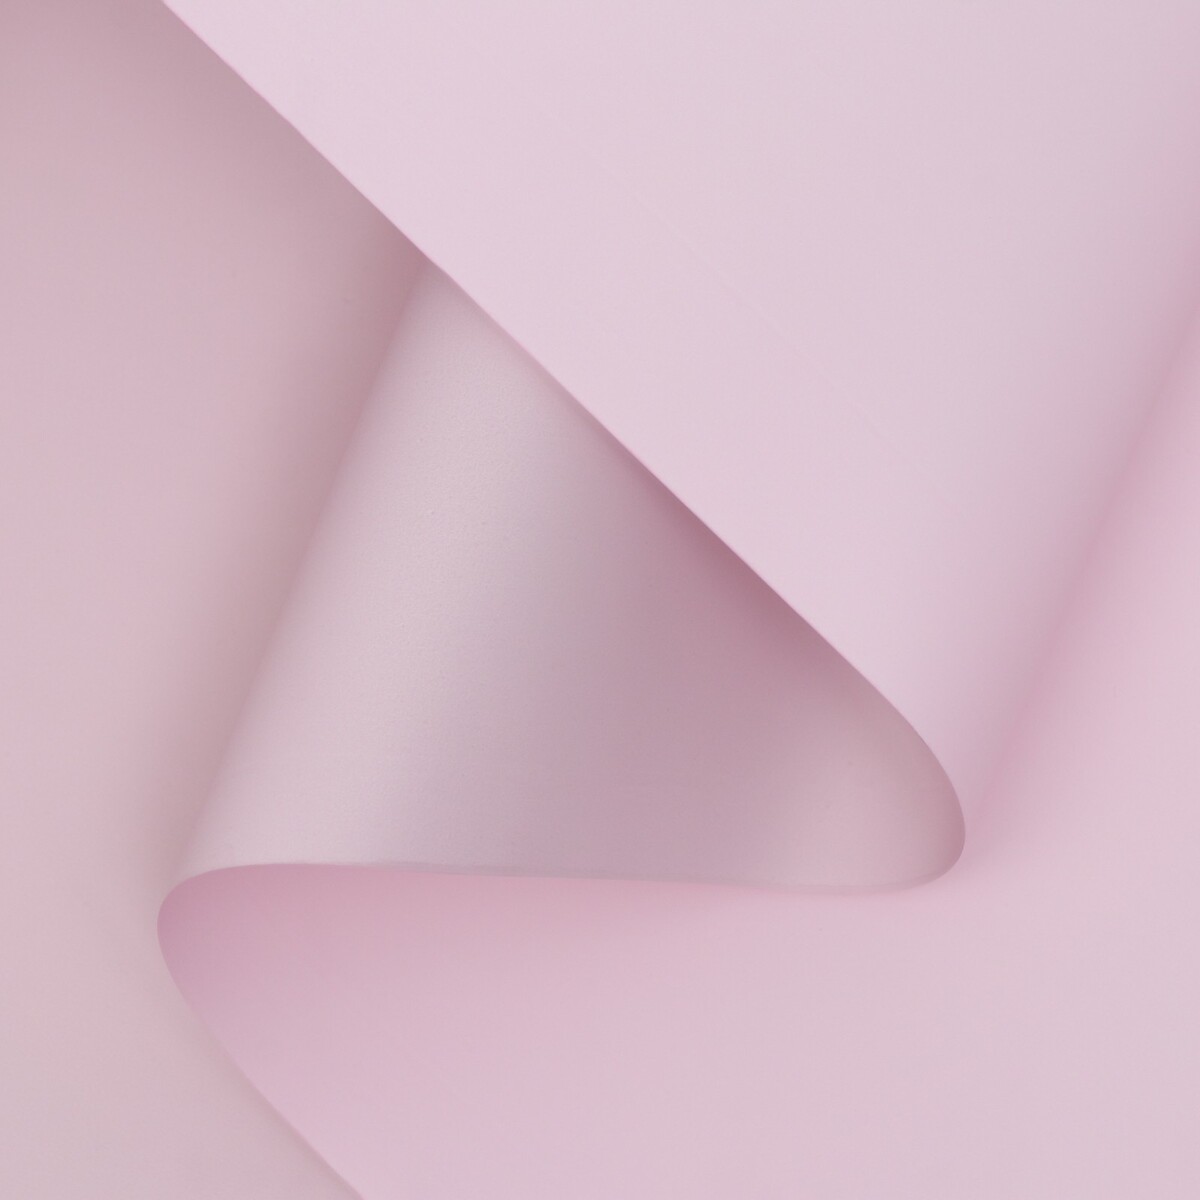 Пленка матовая двухсторонняя , пастельная серия, 65 мкм пастельный, розовый, 0,5 x 10 м пленка матовая 0 5 x 10 м 65 мкм пастельная серия